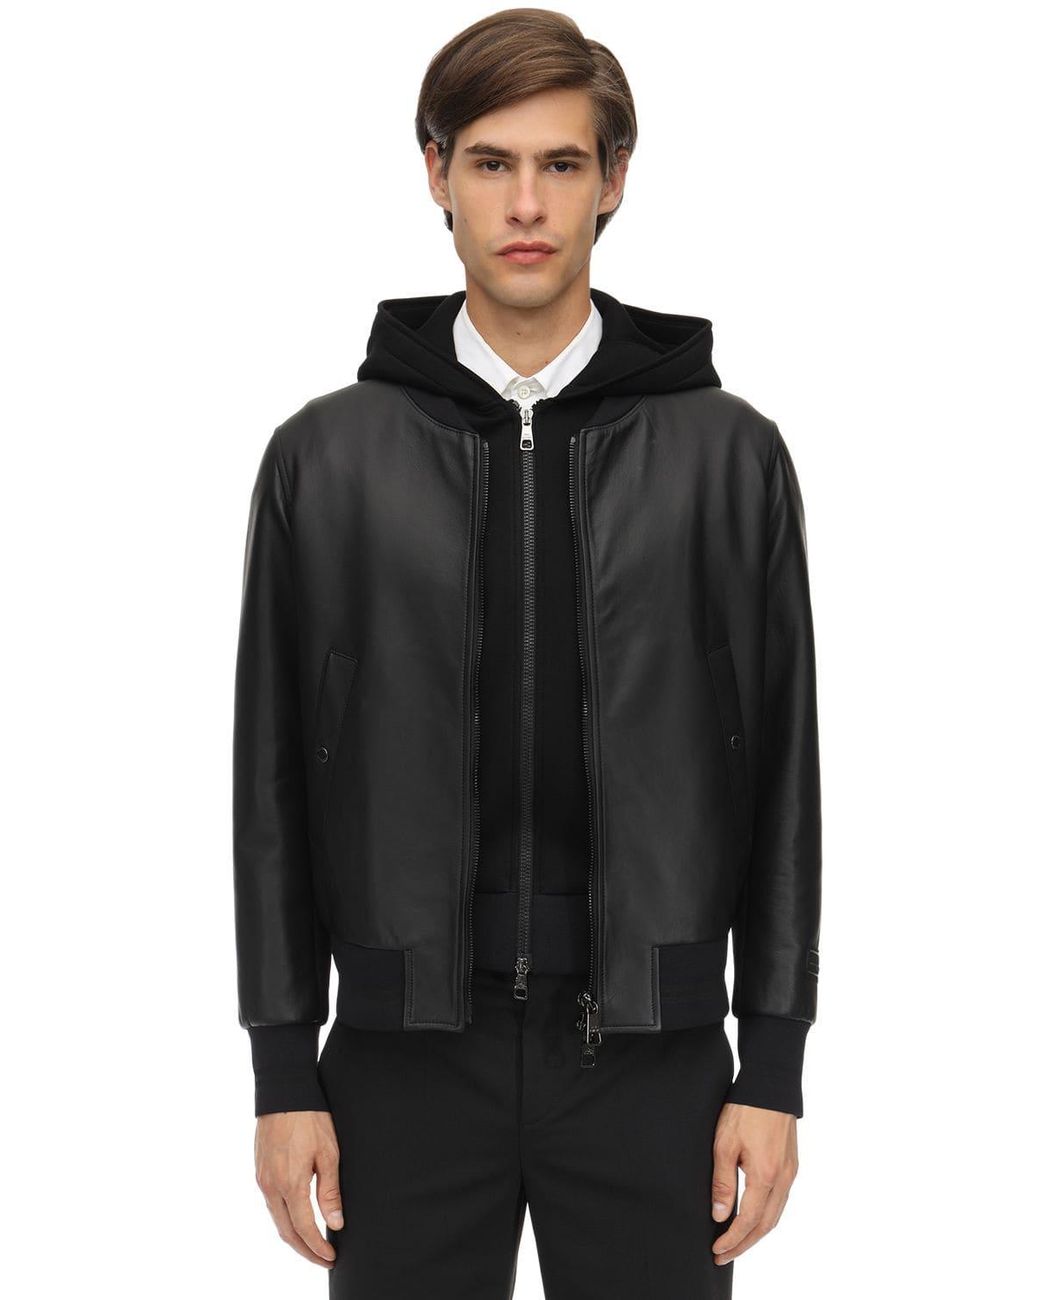 Neil Barrett Hooded Leather Bomber Jacket in Black for Men - Lyst